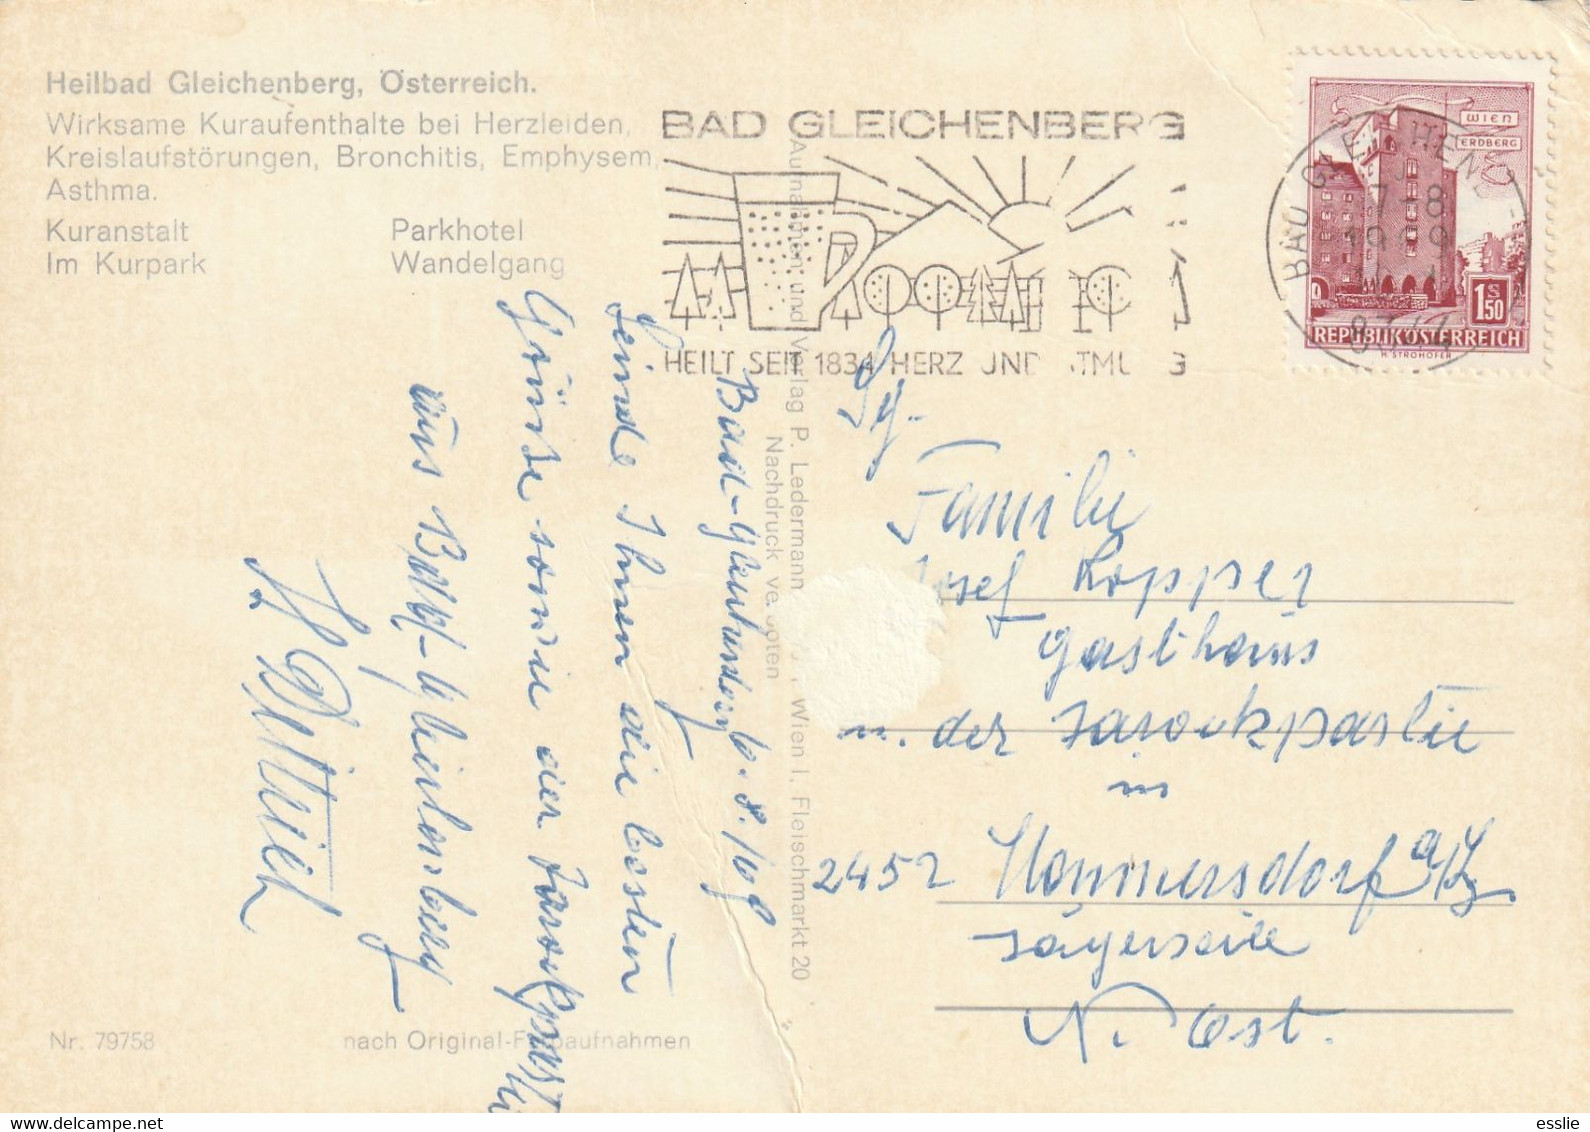 Austria Heilbad Gleichenberg - Postcard Post Card - 1969 - Bad Gleichenberg